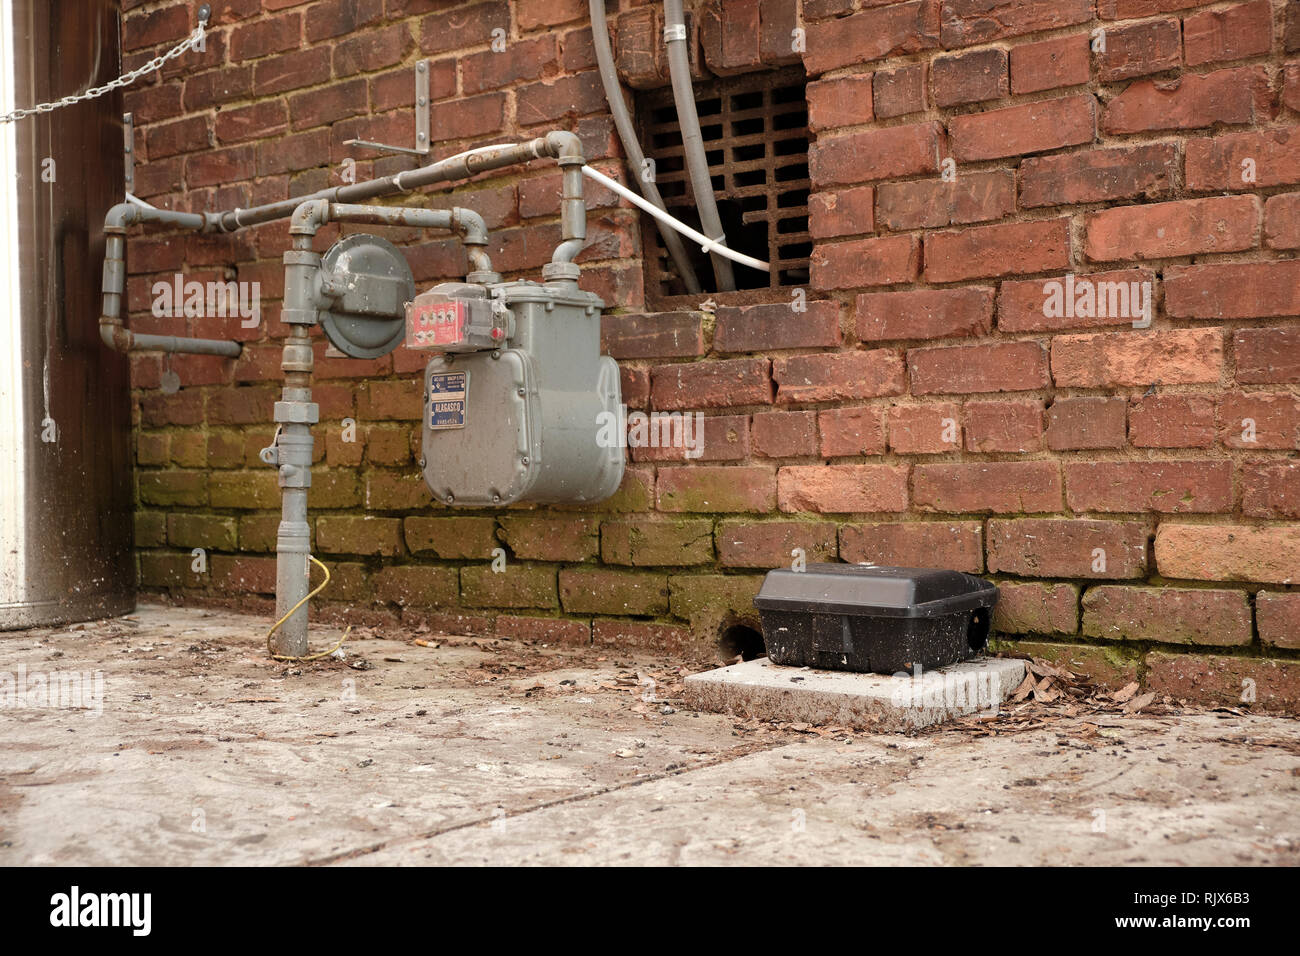 Große Schwarze Ratte oder Maus Trap Trap Kästchen neben einem gaszähler in einer Stadt oder in der Stadt Gasse in Montgomery, Alabama, USA. Stockfoto